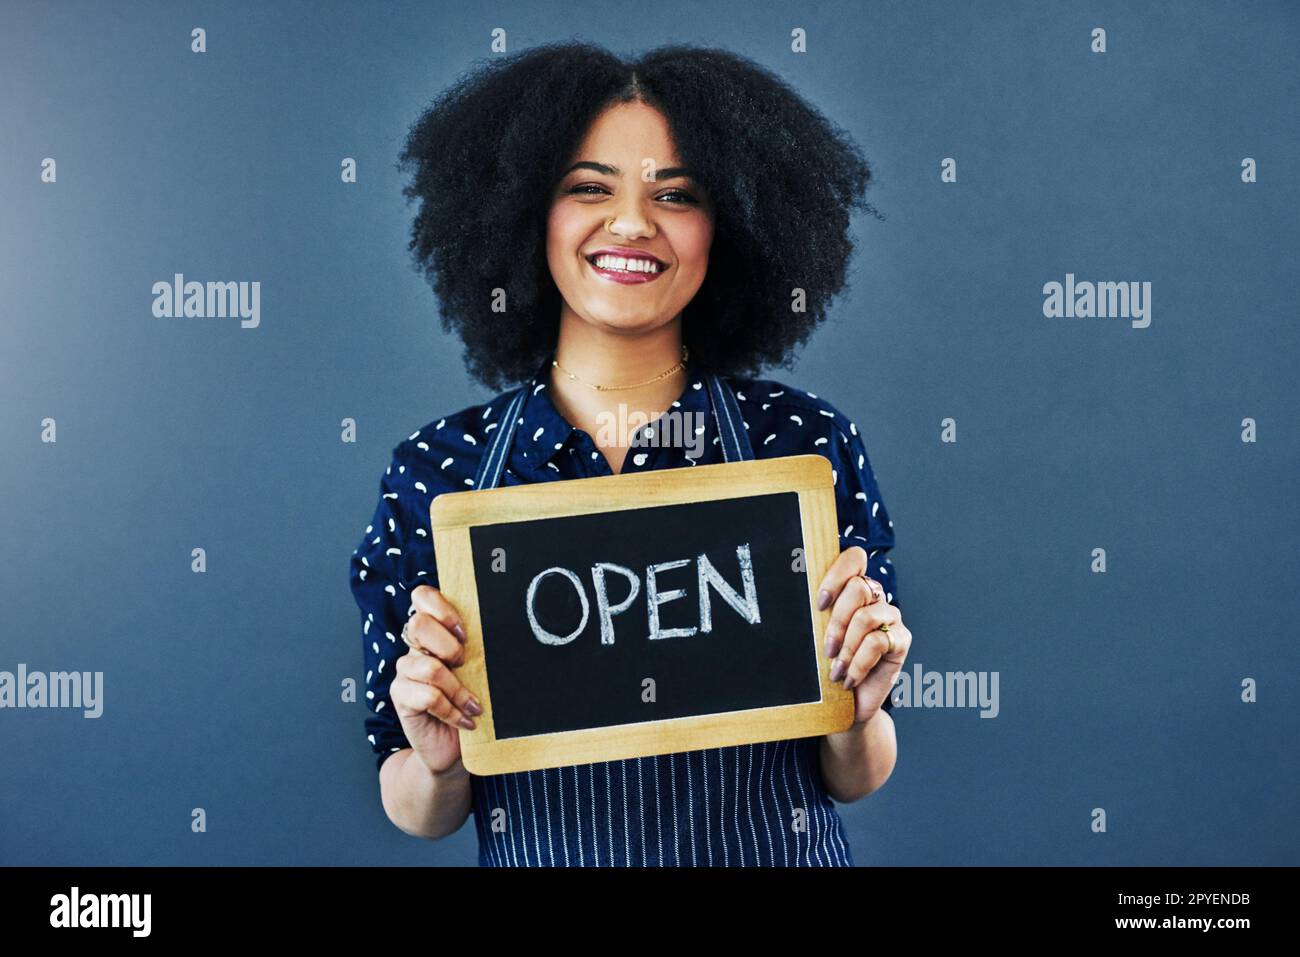 Herzlich Willkommen. für bestehende und neue Kunden Studiofoto einer jungen Frau, die eine Tafel hält, mit dem Wort offen auf blauem Hintergrund. Stockfoto